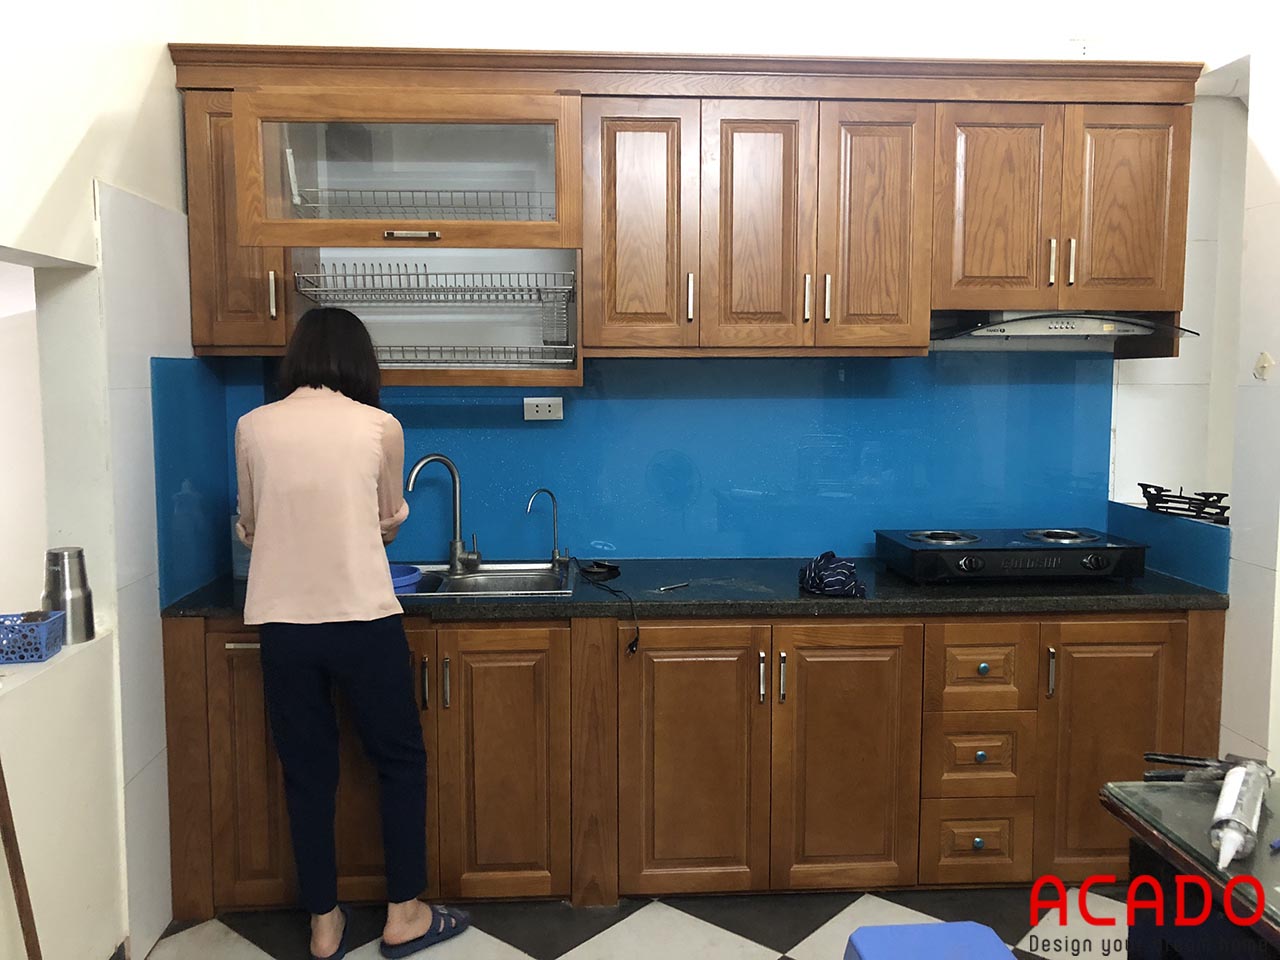 Tủ bếp gỗ sồi tự nhiên và kính bếp màu xanh dương sang trọng gia đình chị Hải - Ngô Thì Nhậm, Hà Đông